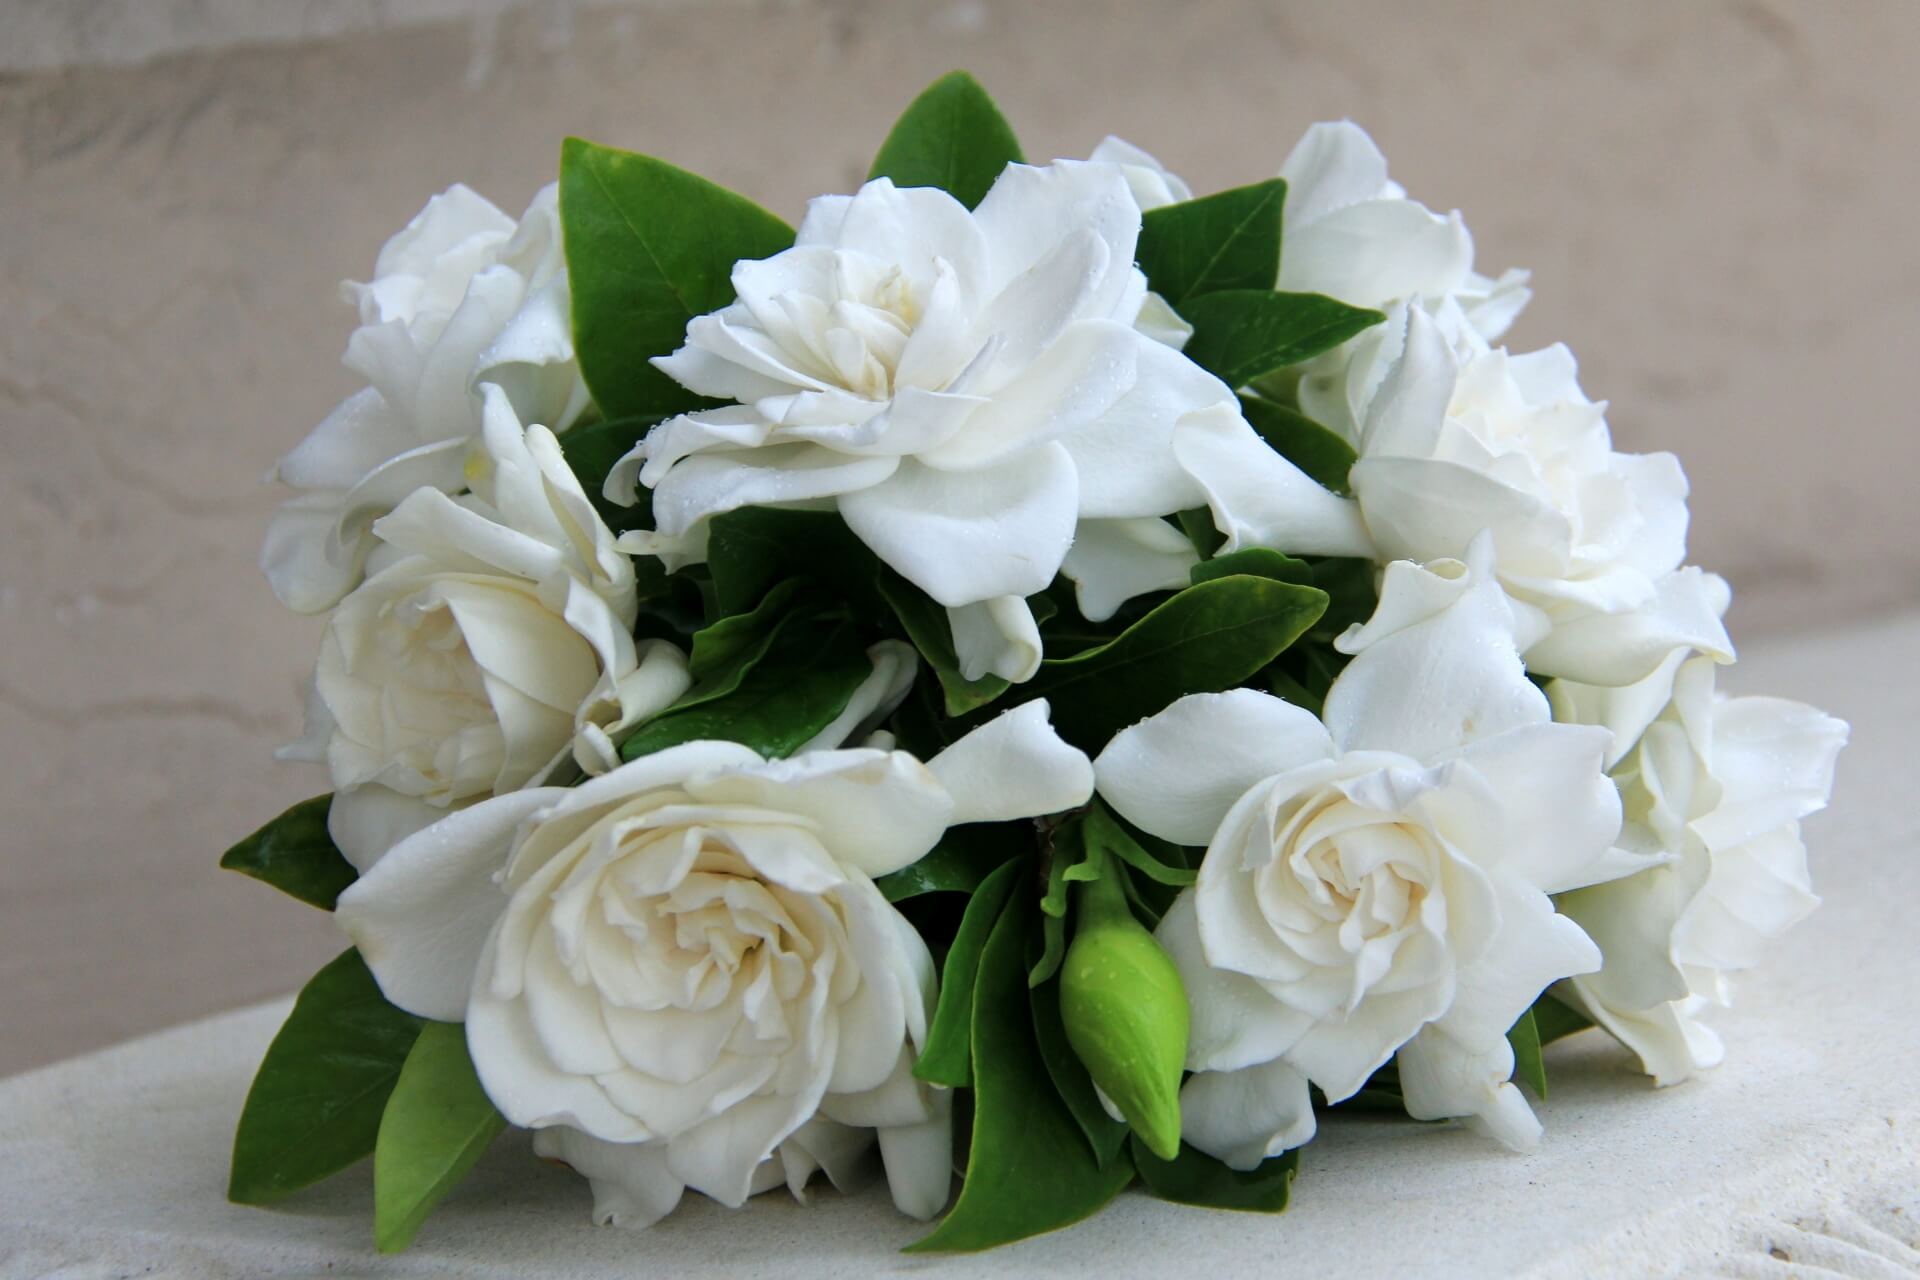 bouquet con fiori di gardenia: colori, profumo, essenza e simbologia